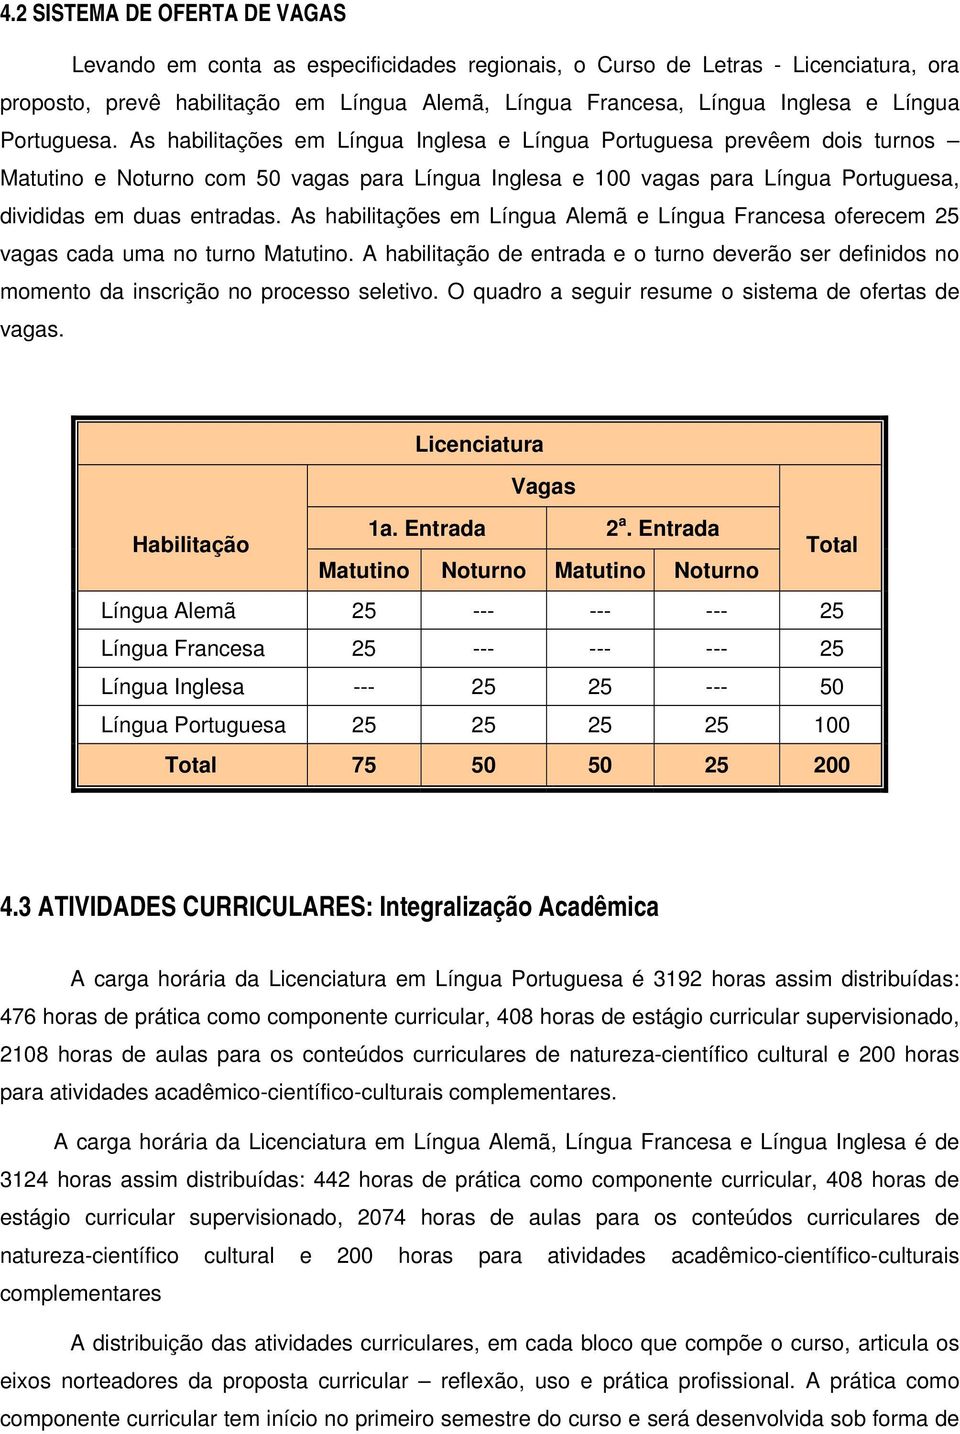 As habilitações em Língua Inglesa e Língua Portuguesa prevêem dois turnos Matutino e Noturno com 50 vagas para Língua Inglesa e 100 vagas para Língua Portuguesa, divididas em duas entradas.